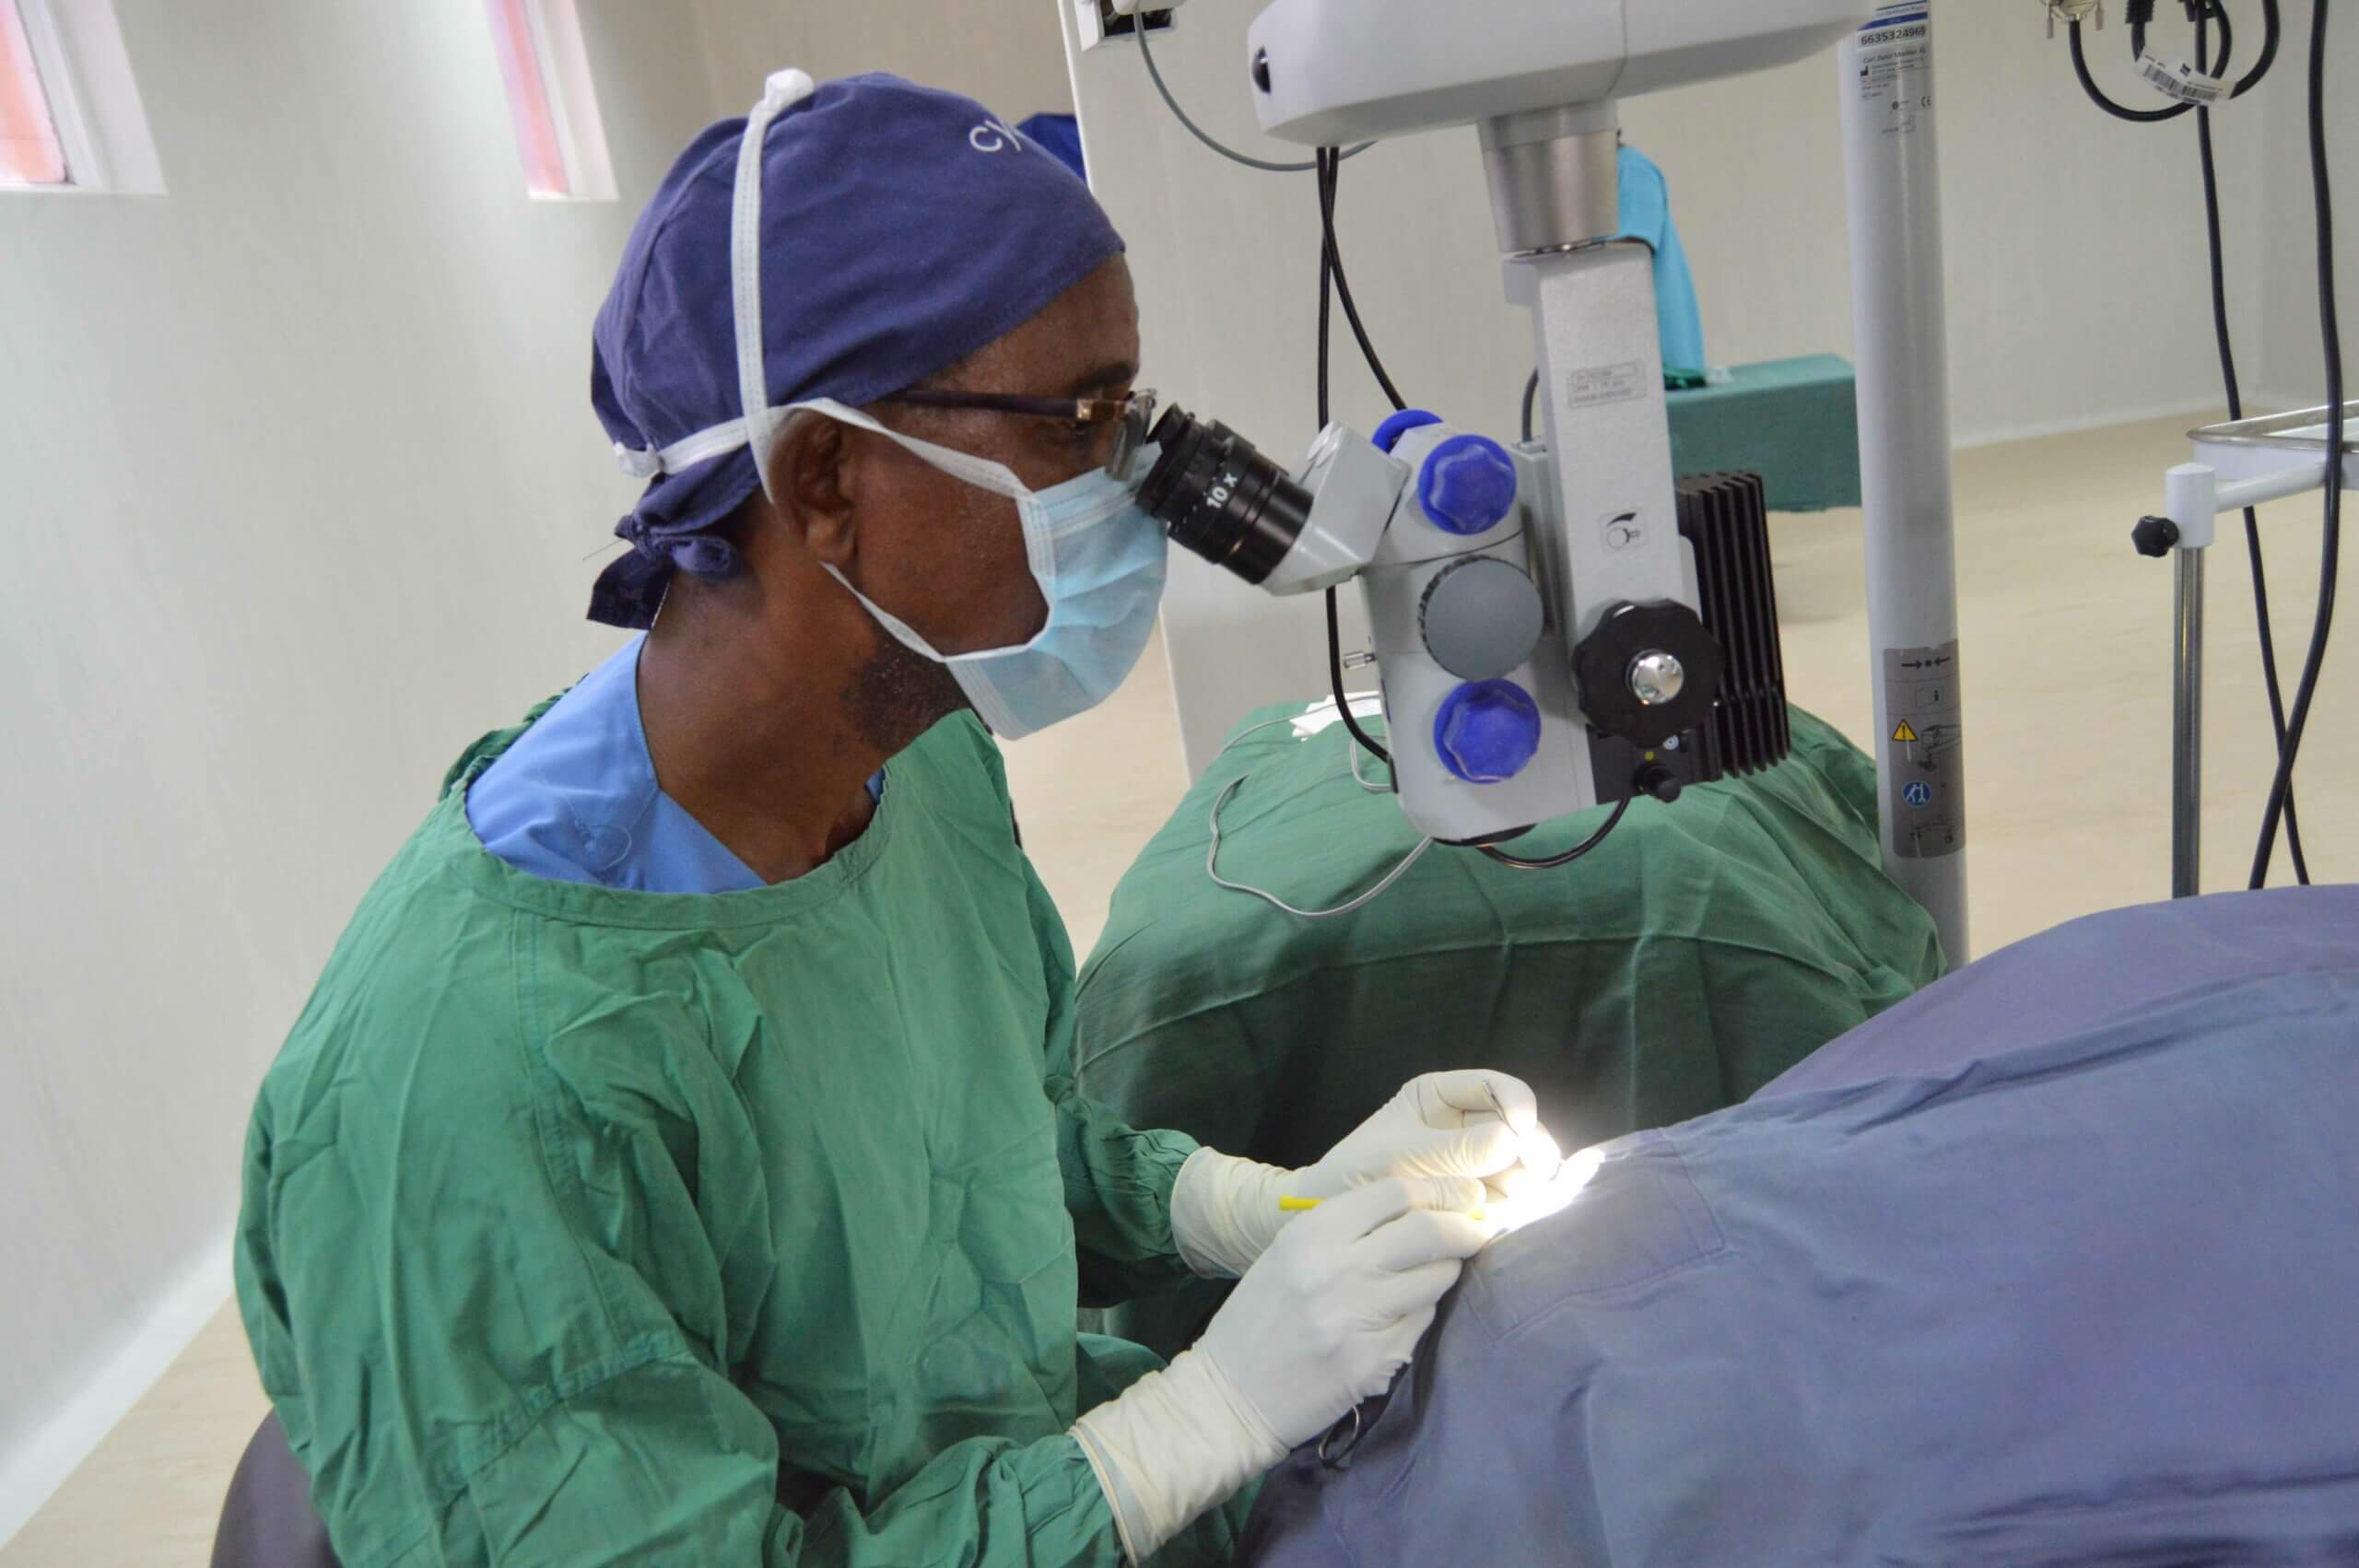 Dr. Abel Polaze aus Mosambik blickt durch ein Gerät, während er eine Person vor sich am Tisch operiert.